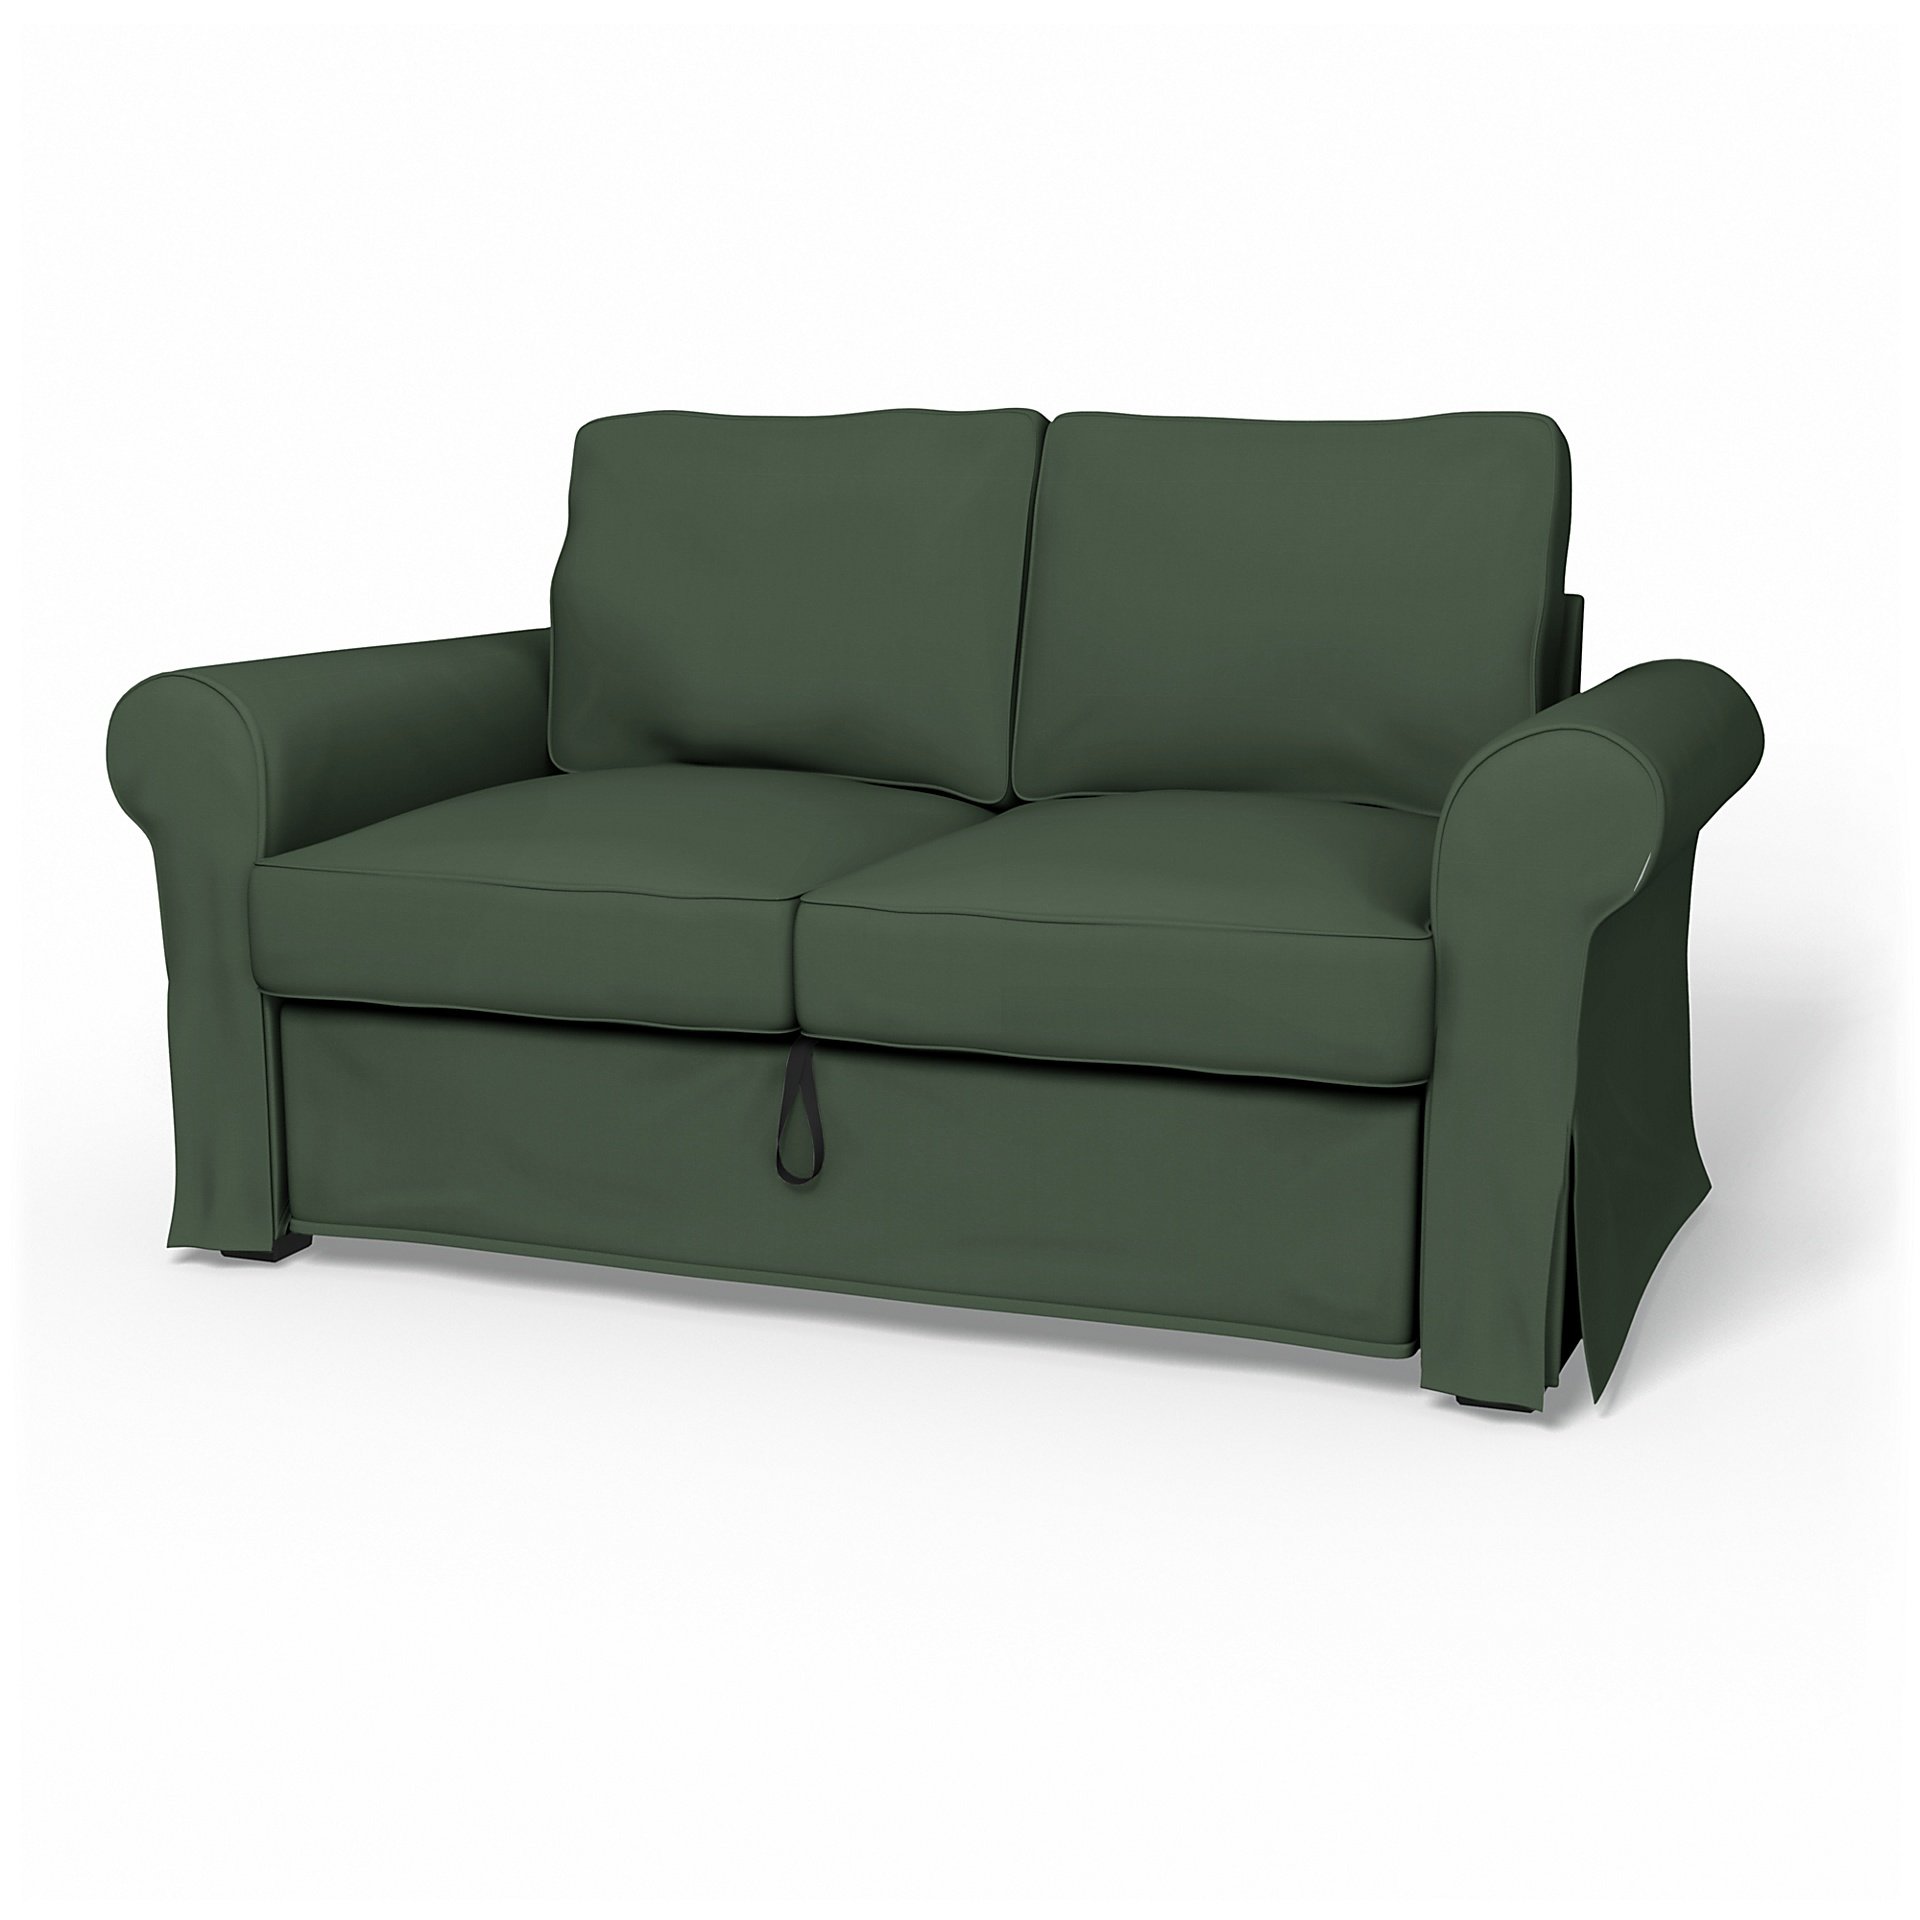 IKEA - Backabro 2 Seater Sofa Bed Cover, Thyme, Cotton - Bemz